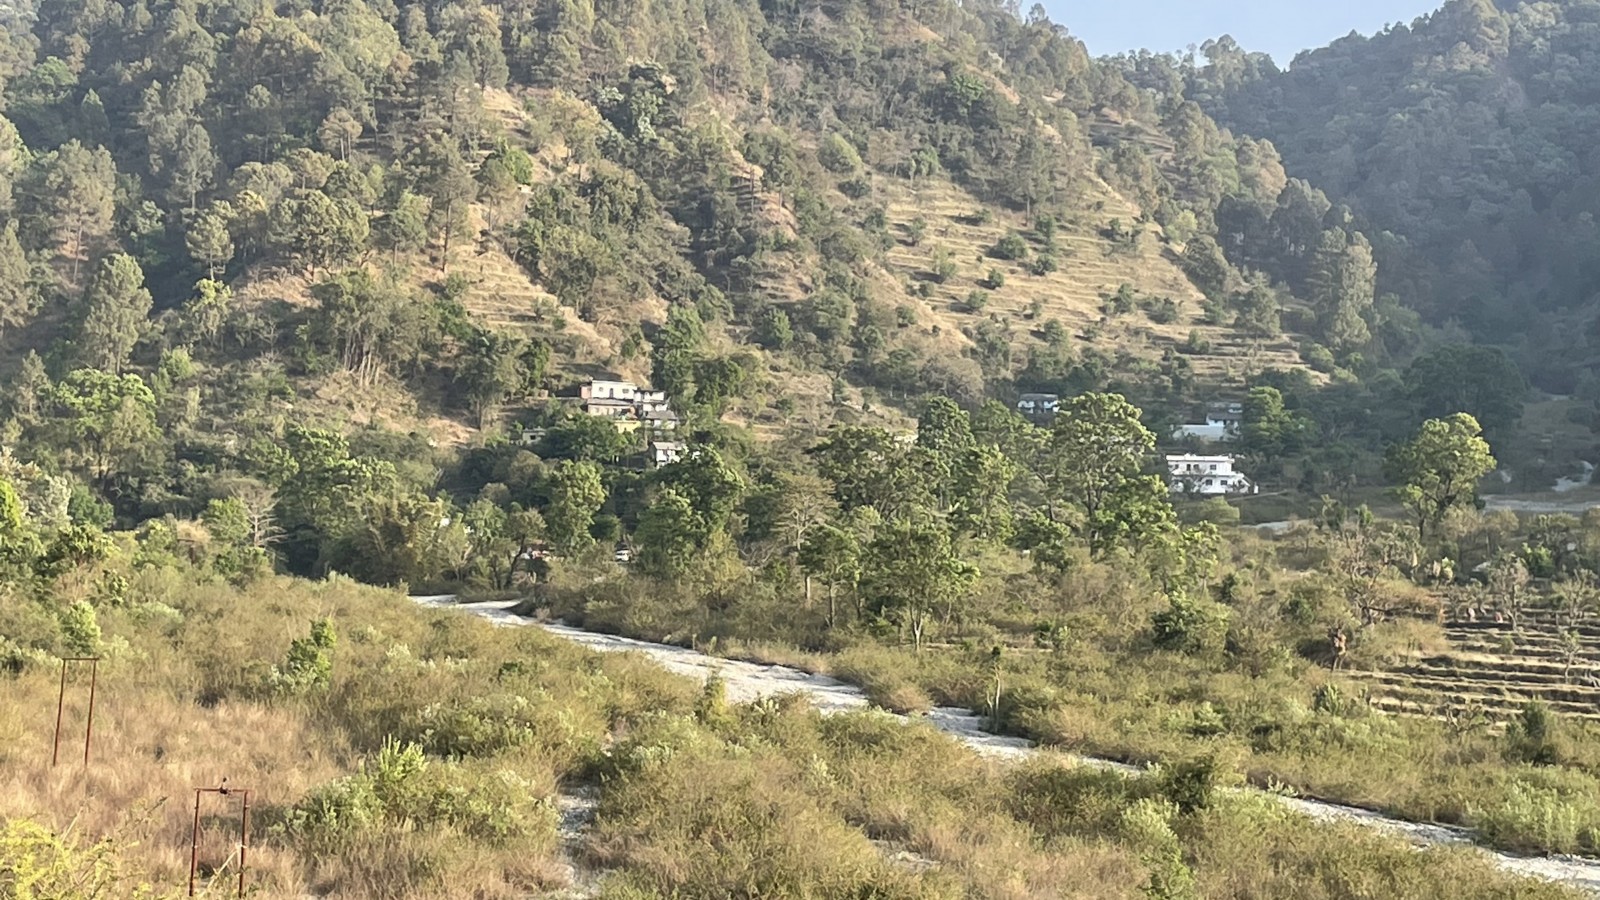 Badol Gaon village, Pauri Garhwal